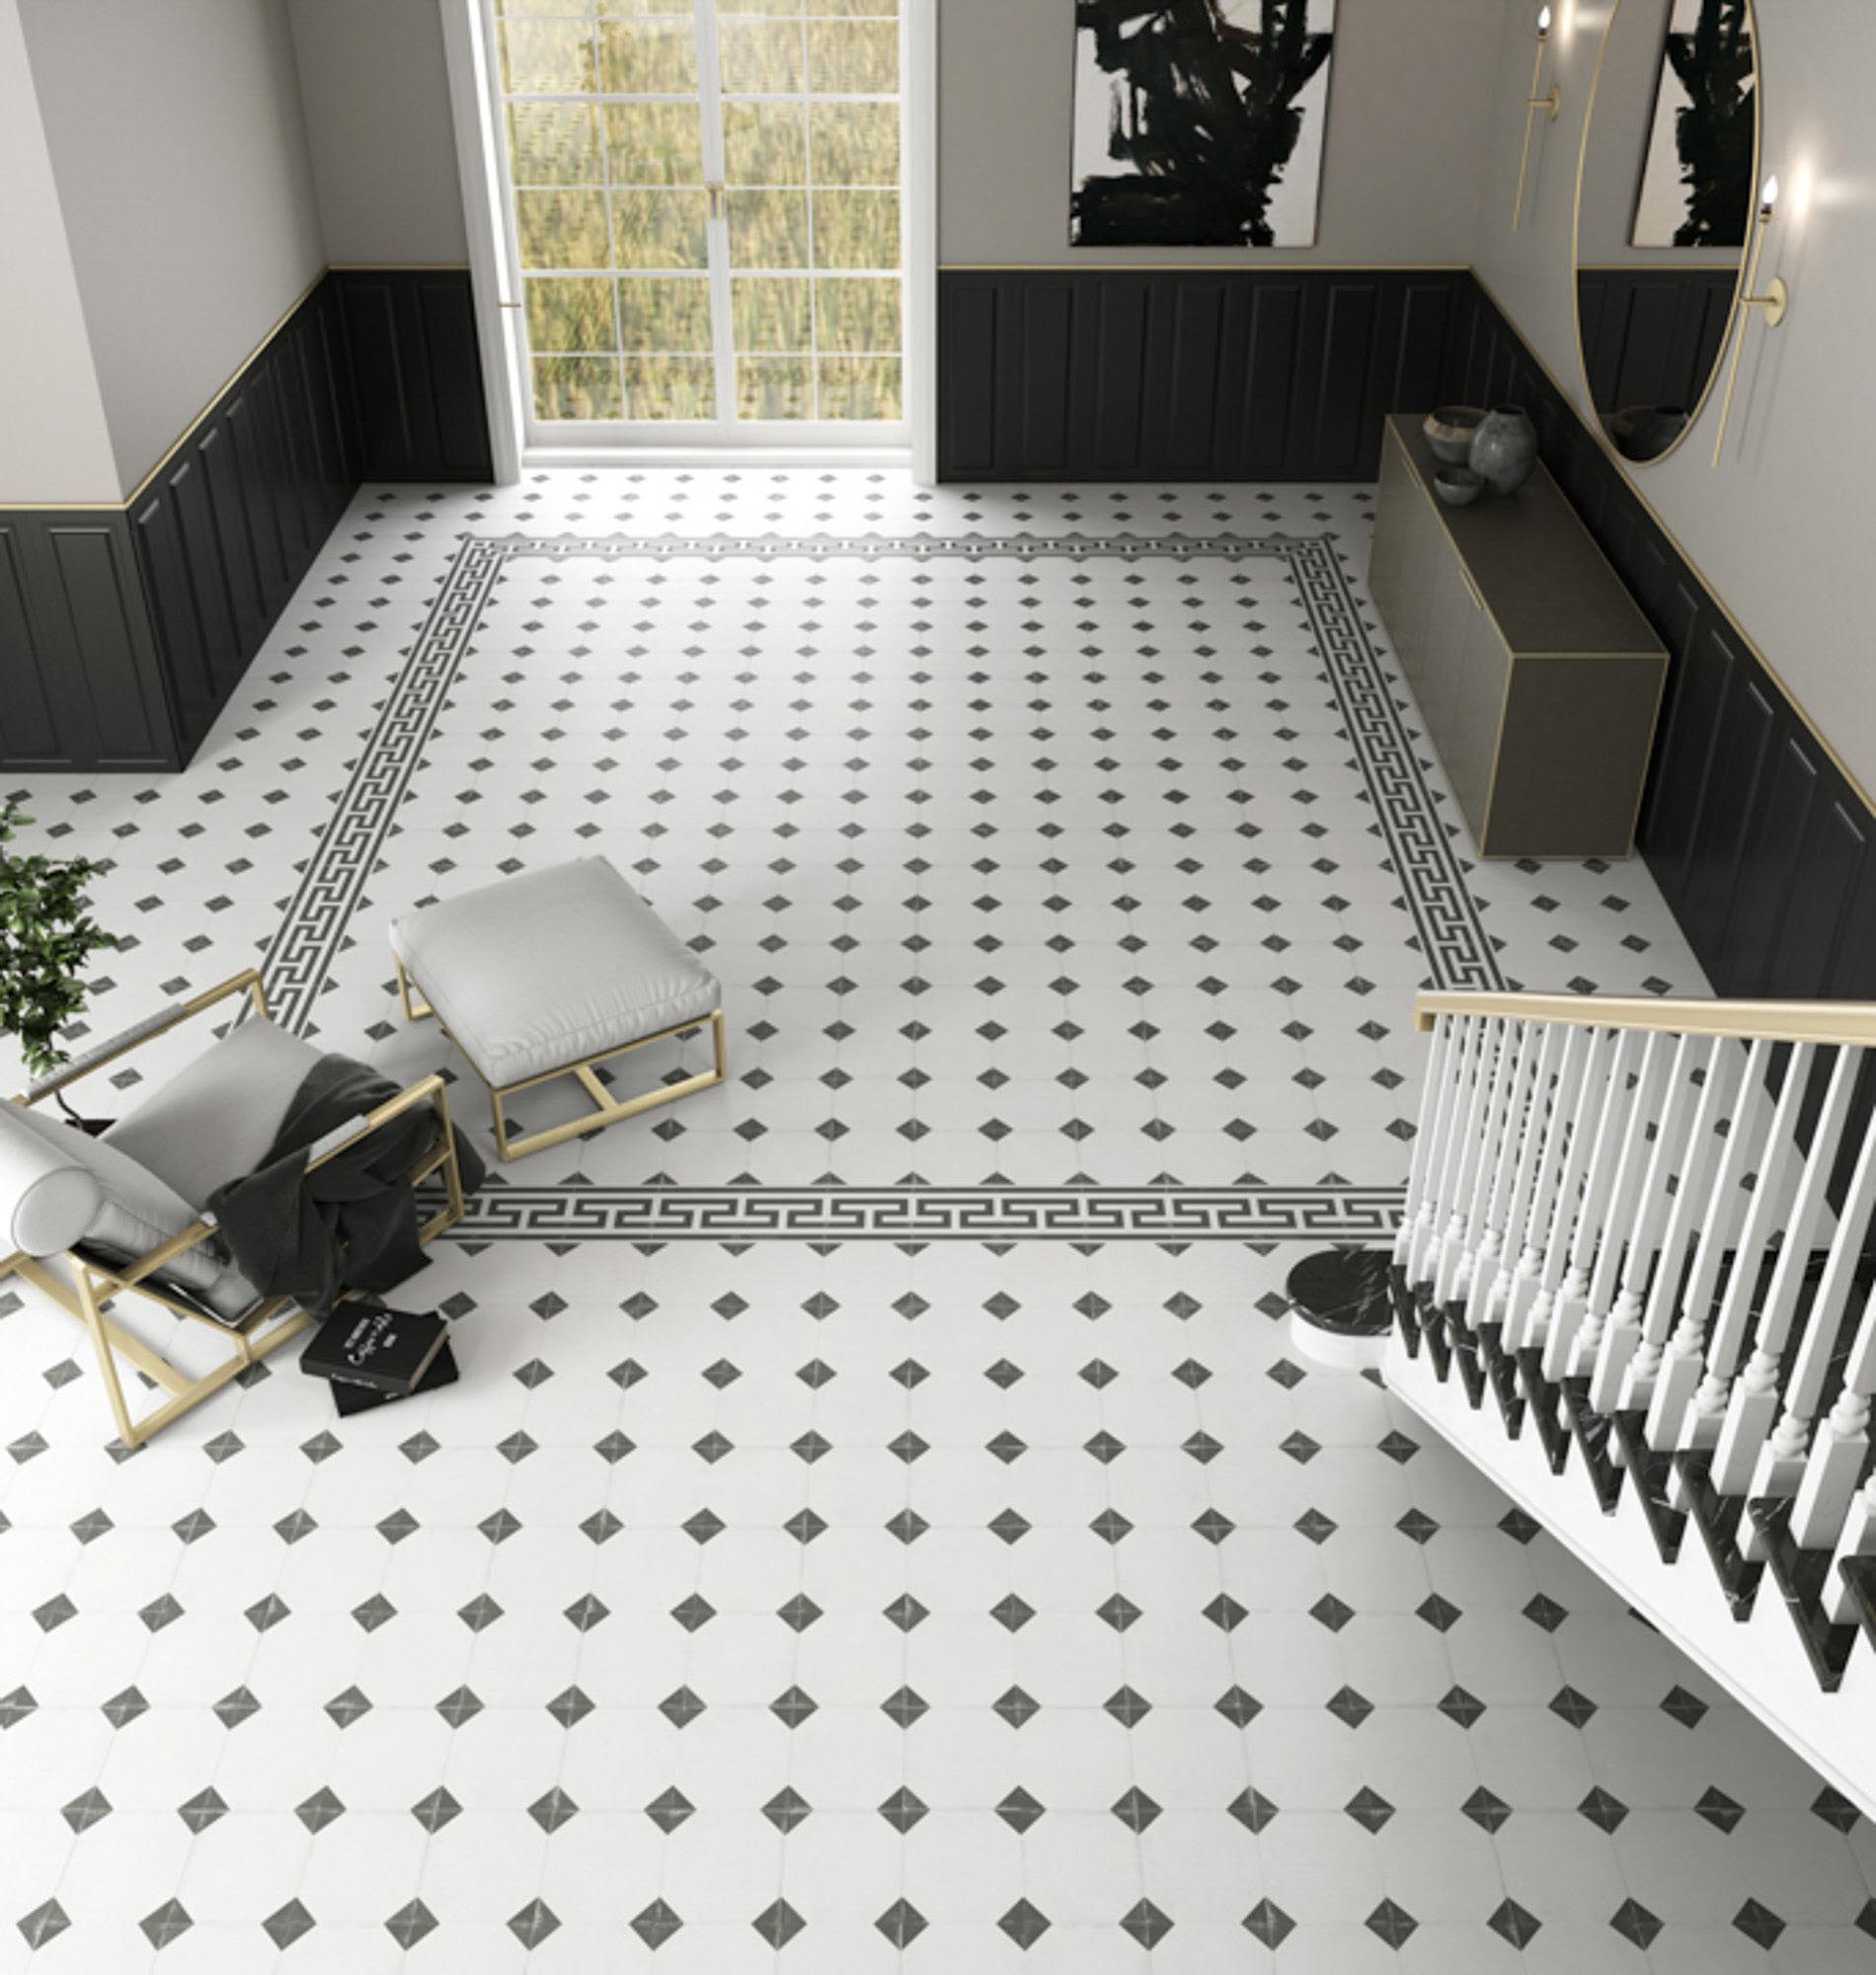 Elegancki korytarz wyłożony klasycznymi biało-czarnymi płytkami ze schodami, fotelem z podnóżkiem, komodą, dużym lustrem i obrazem